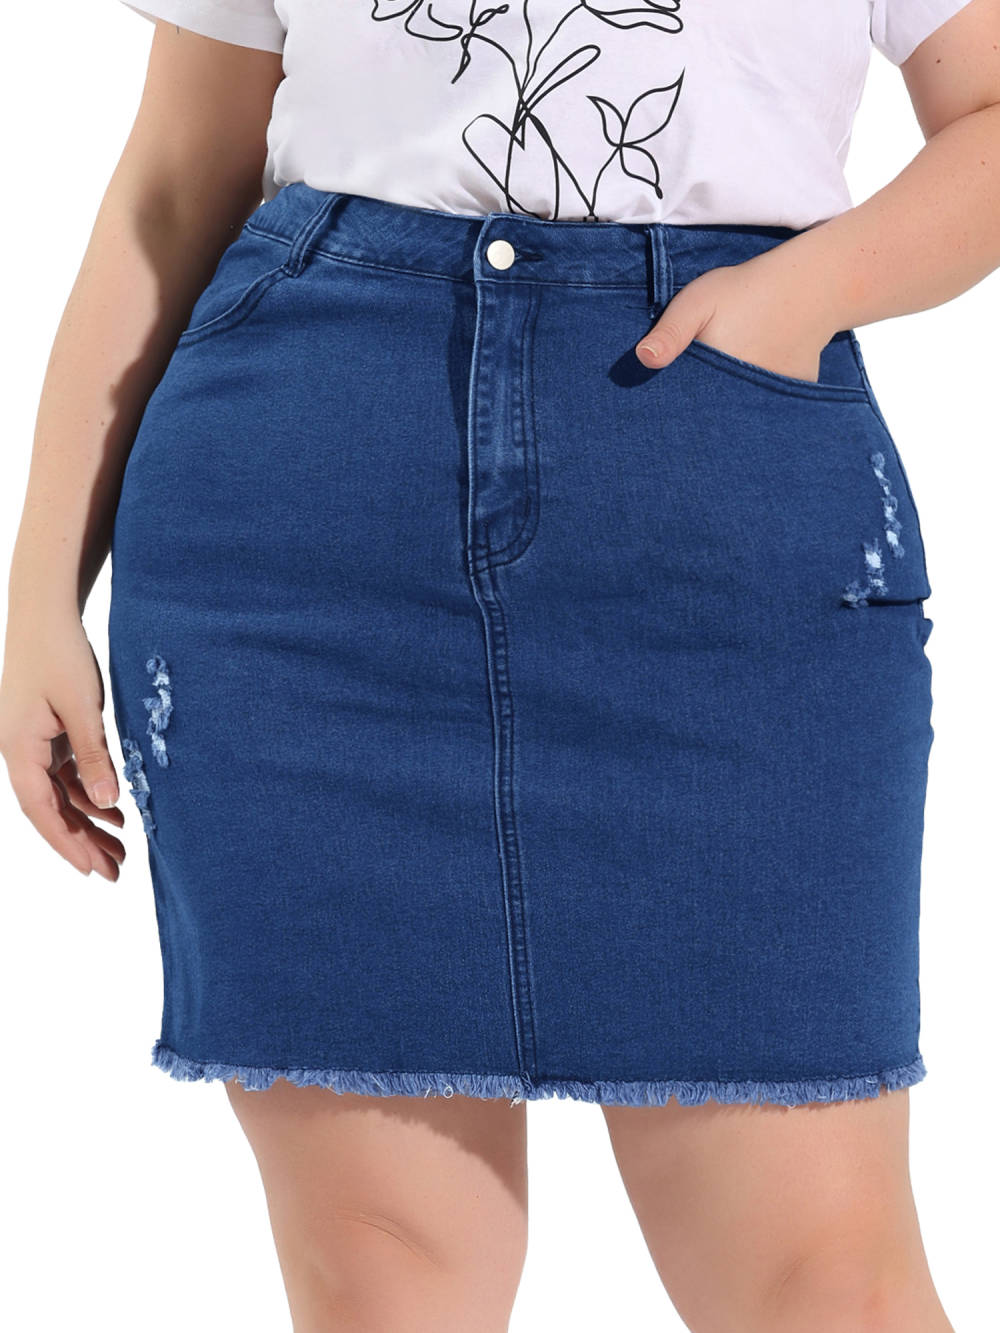 Agnes Orinda - Casual Denim Short Skirt Ripped Mini Skirt